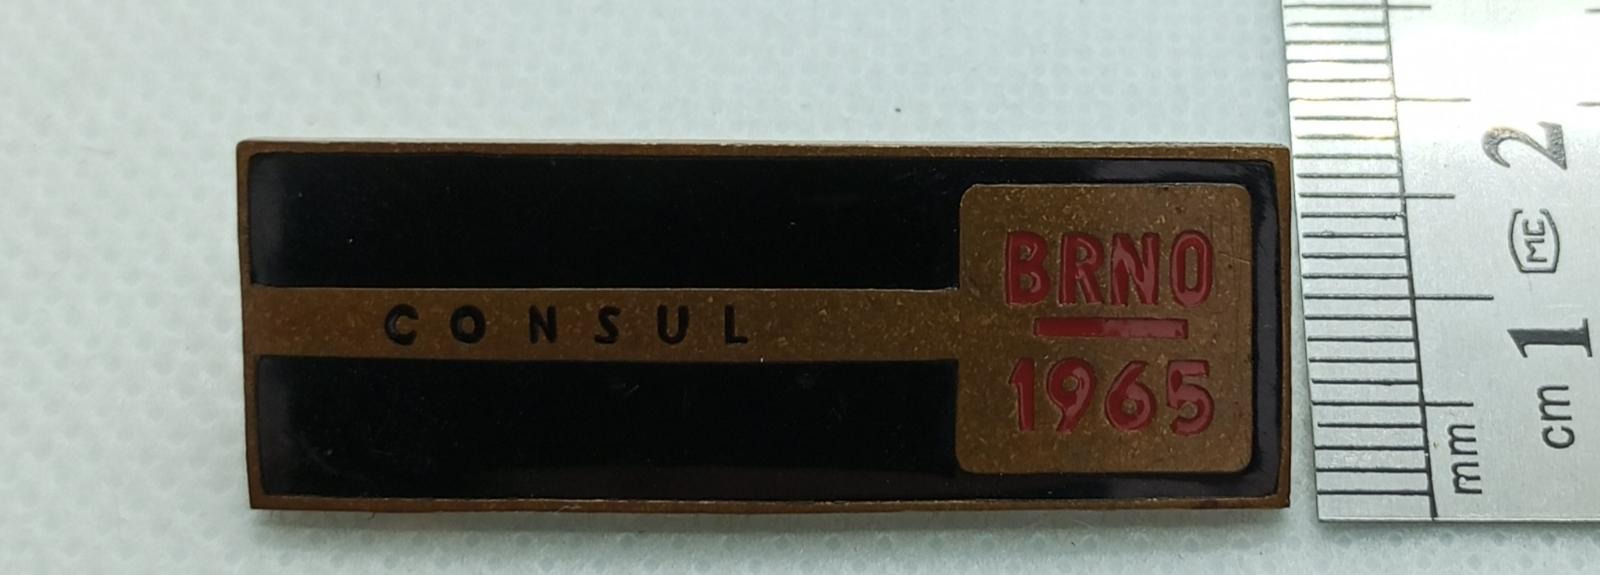 ODZNAK - BRNO 1965 CONSUL - Odznaky, nášivky a medaily